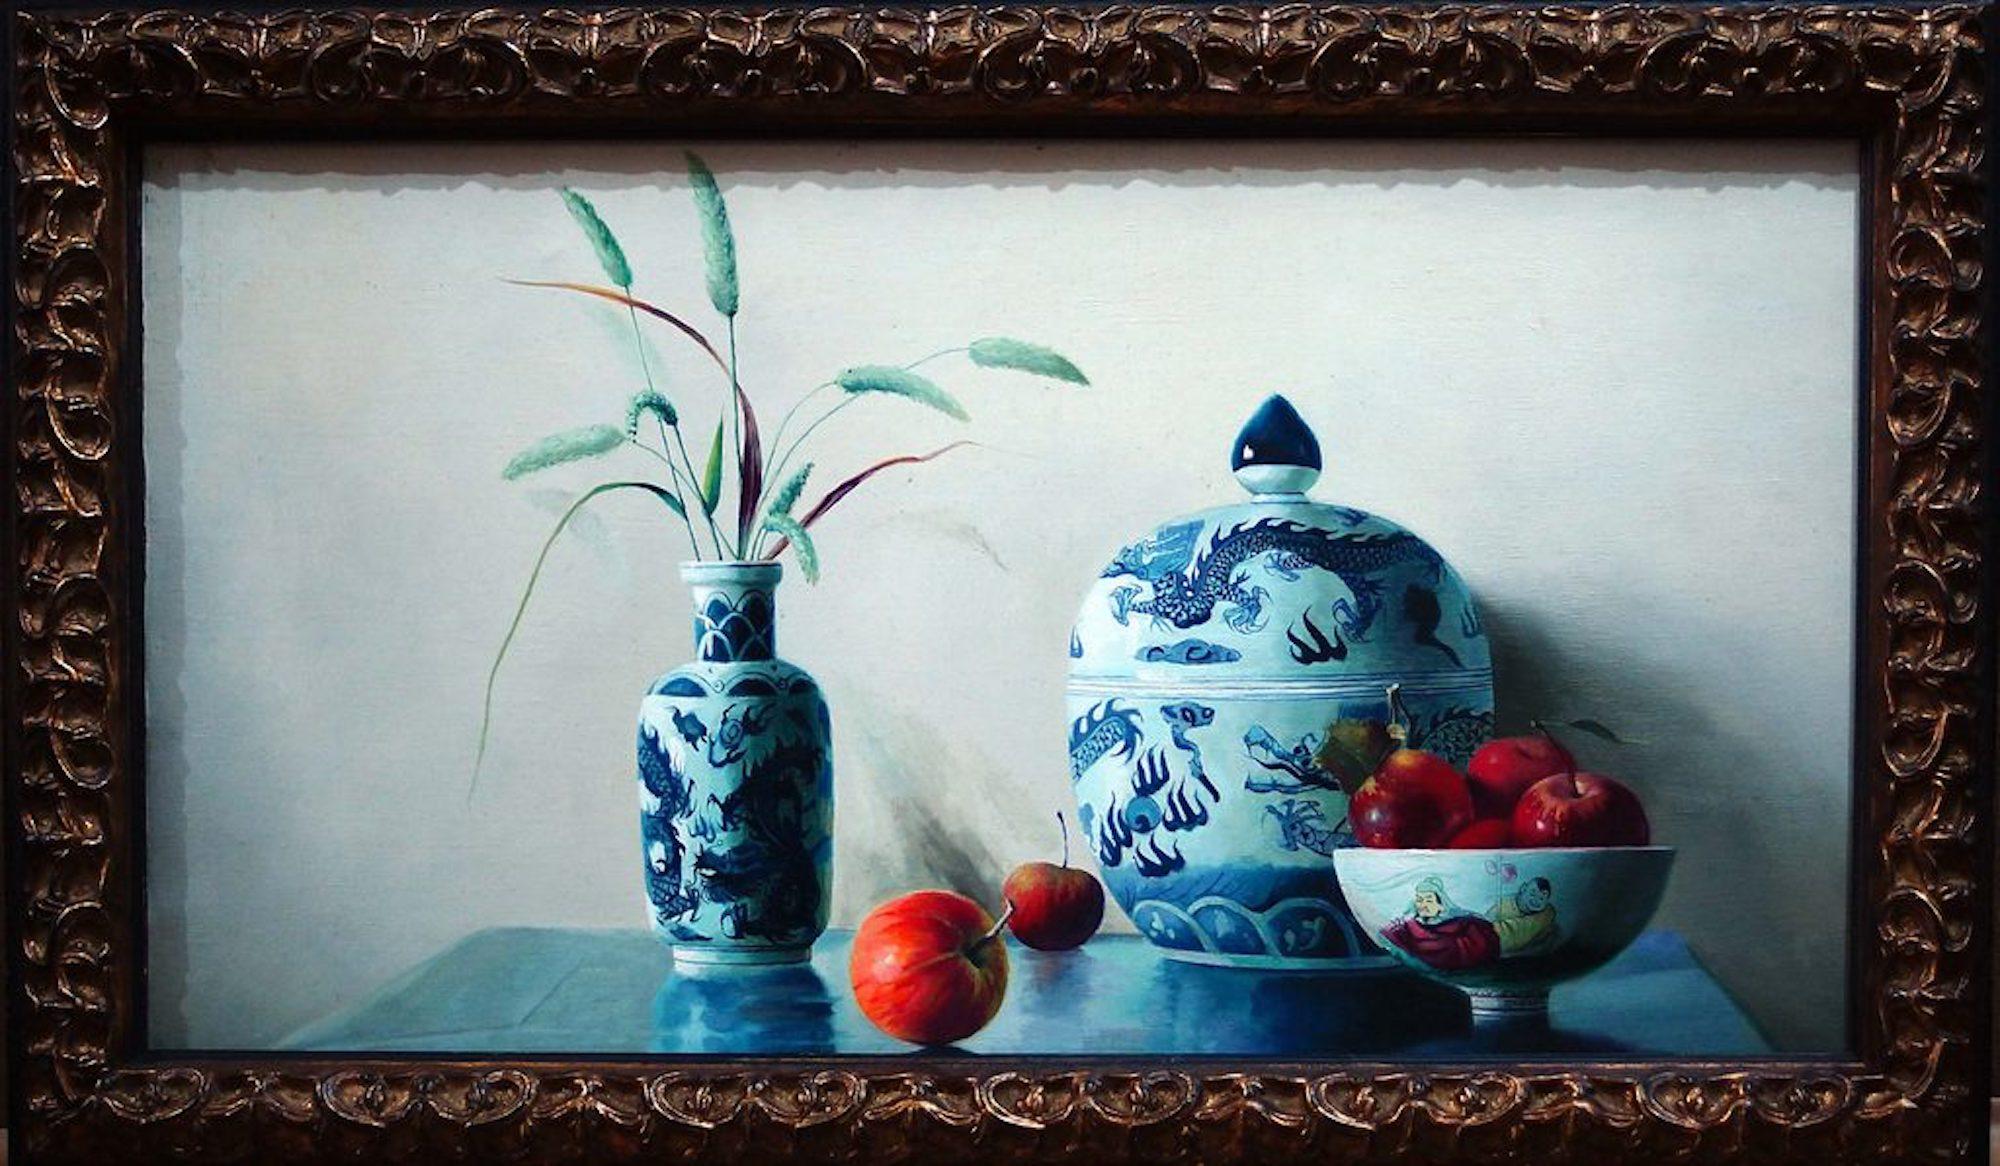 Ceramics est une huile sur toile originale réalisée par le peintre chinois Zhang Wei Guang (Mirror) en 2006.
Excellentes conditions.

Zhang Wei Guang, également appelé "miroir", est né à Helong Jang, en Chine, en 1968. Il a étudié à l'université des